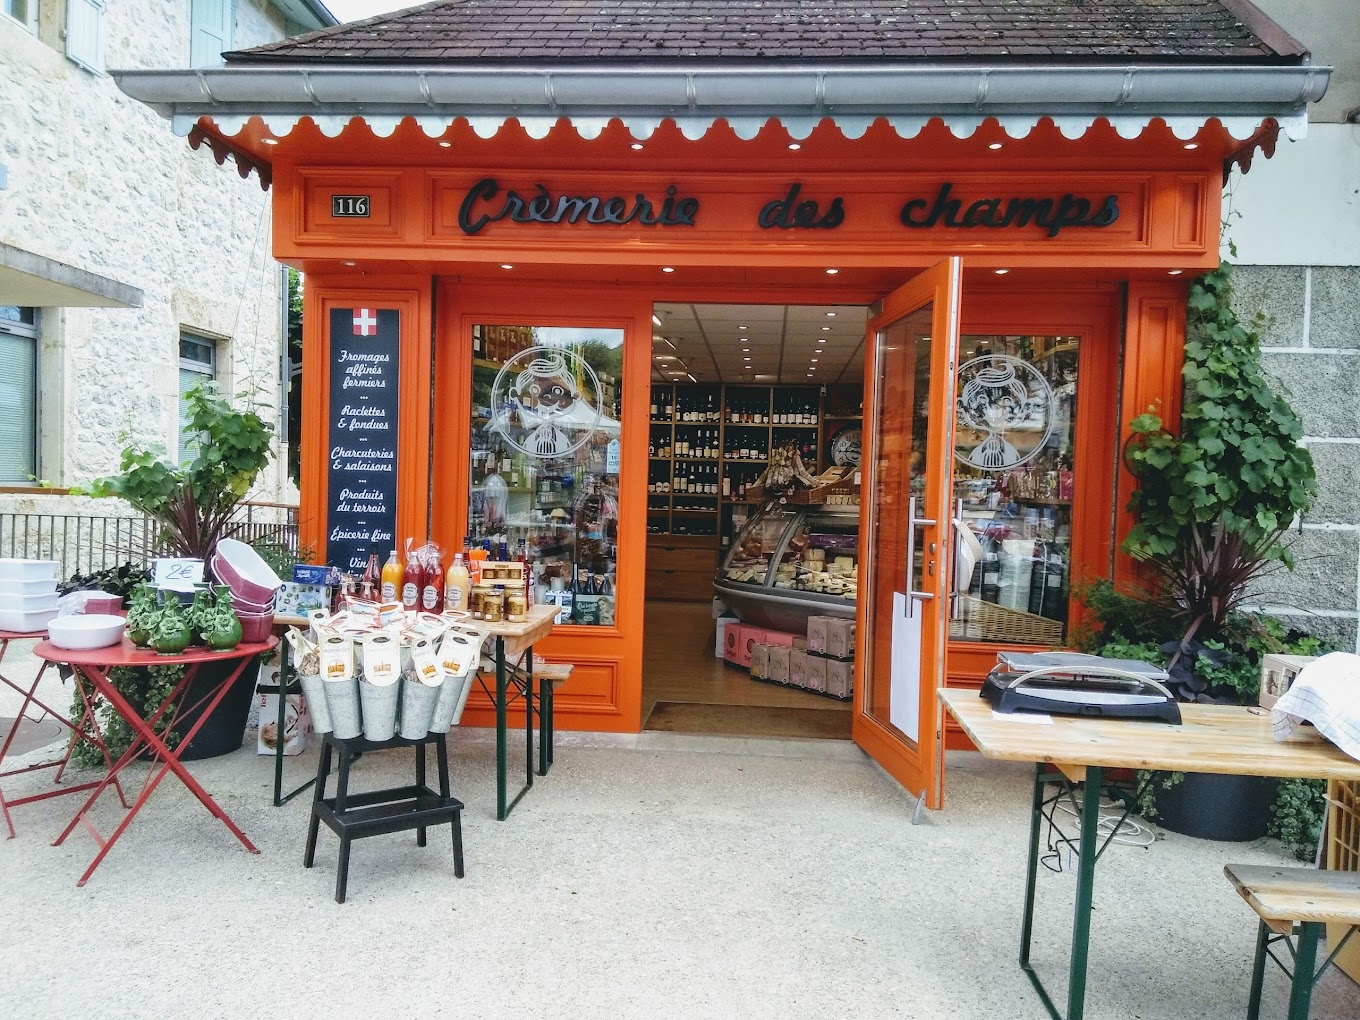 Retrouvez les produits Terroir Café chez Crèmerie des Champs